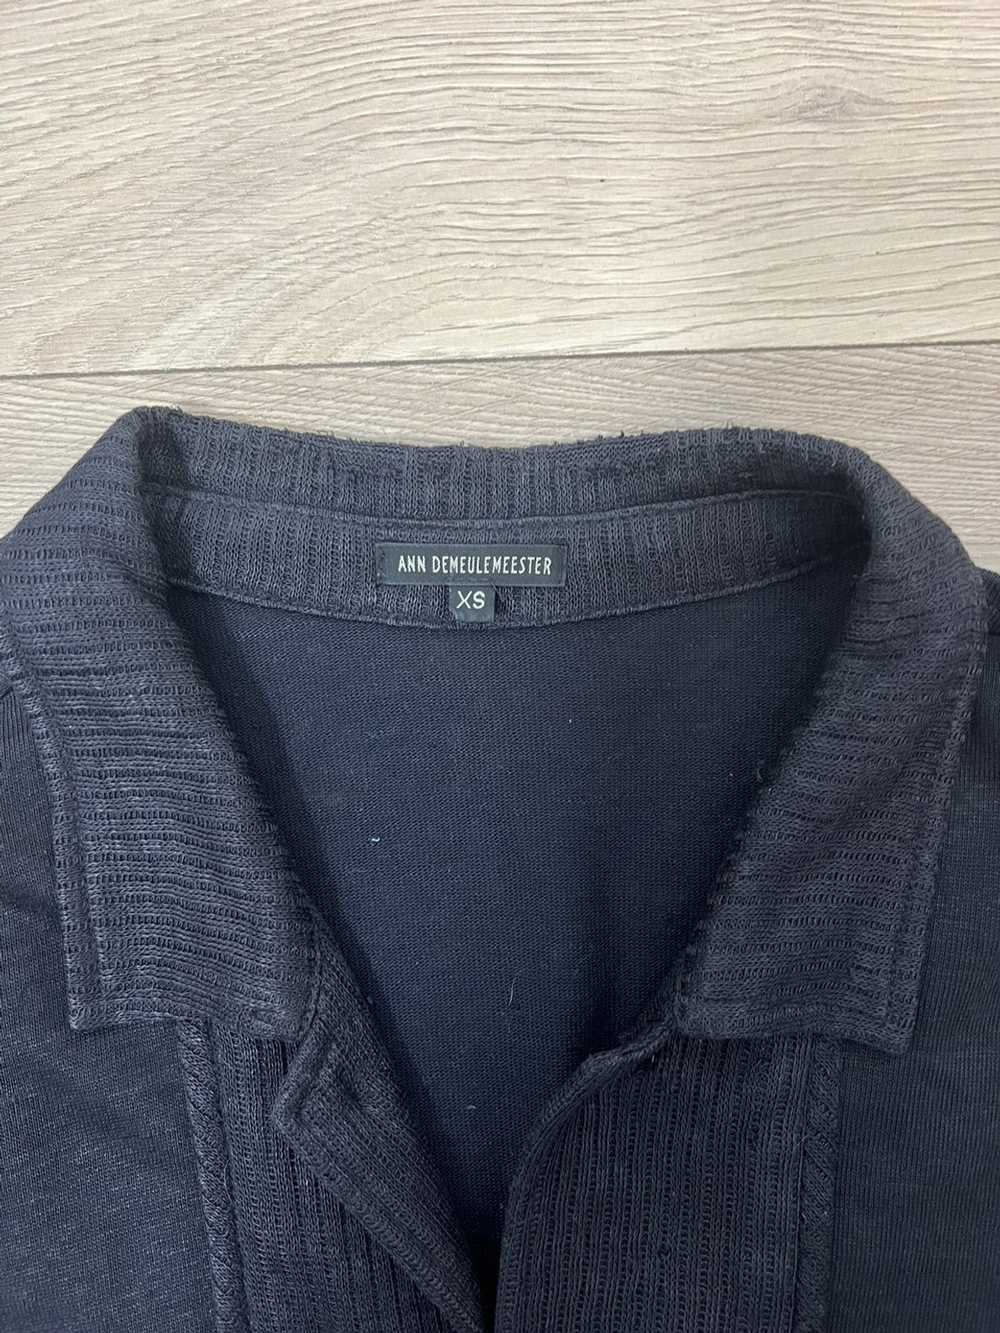 Ann Demeulemeester Black waxed linen overshirt - image 6